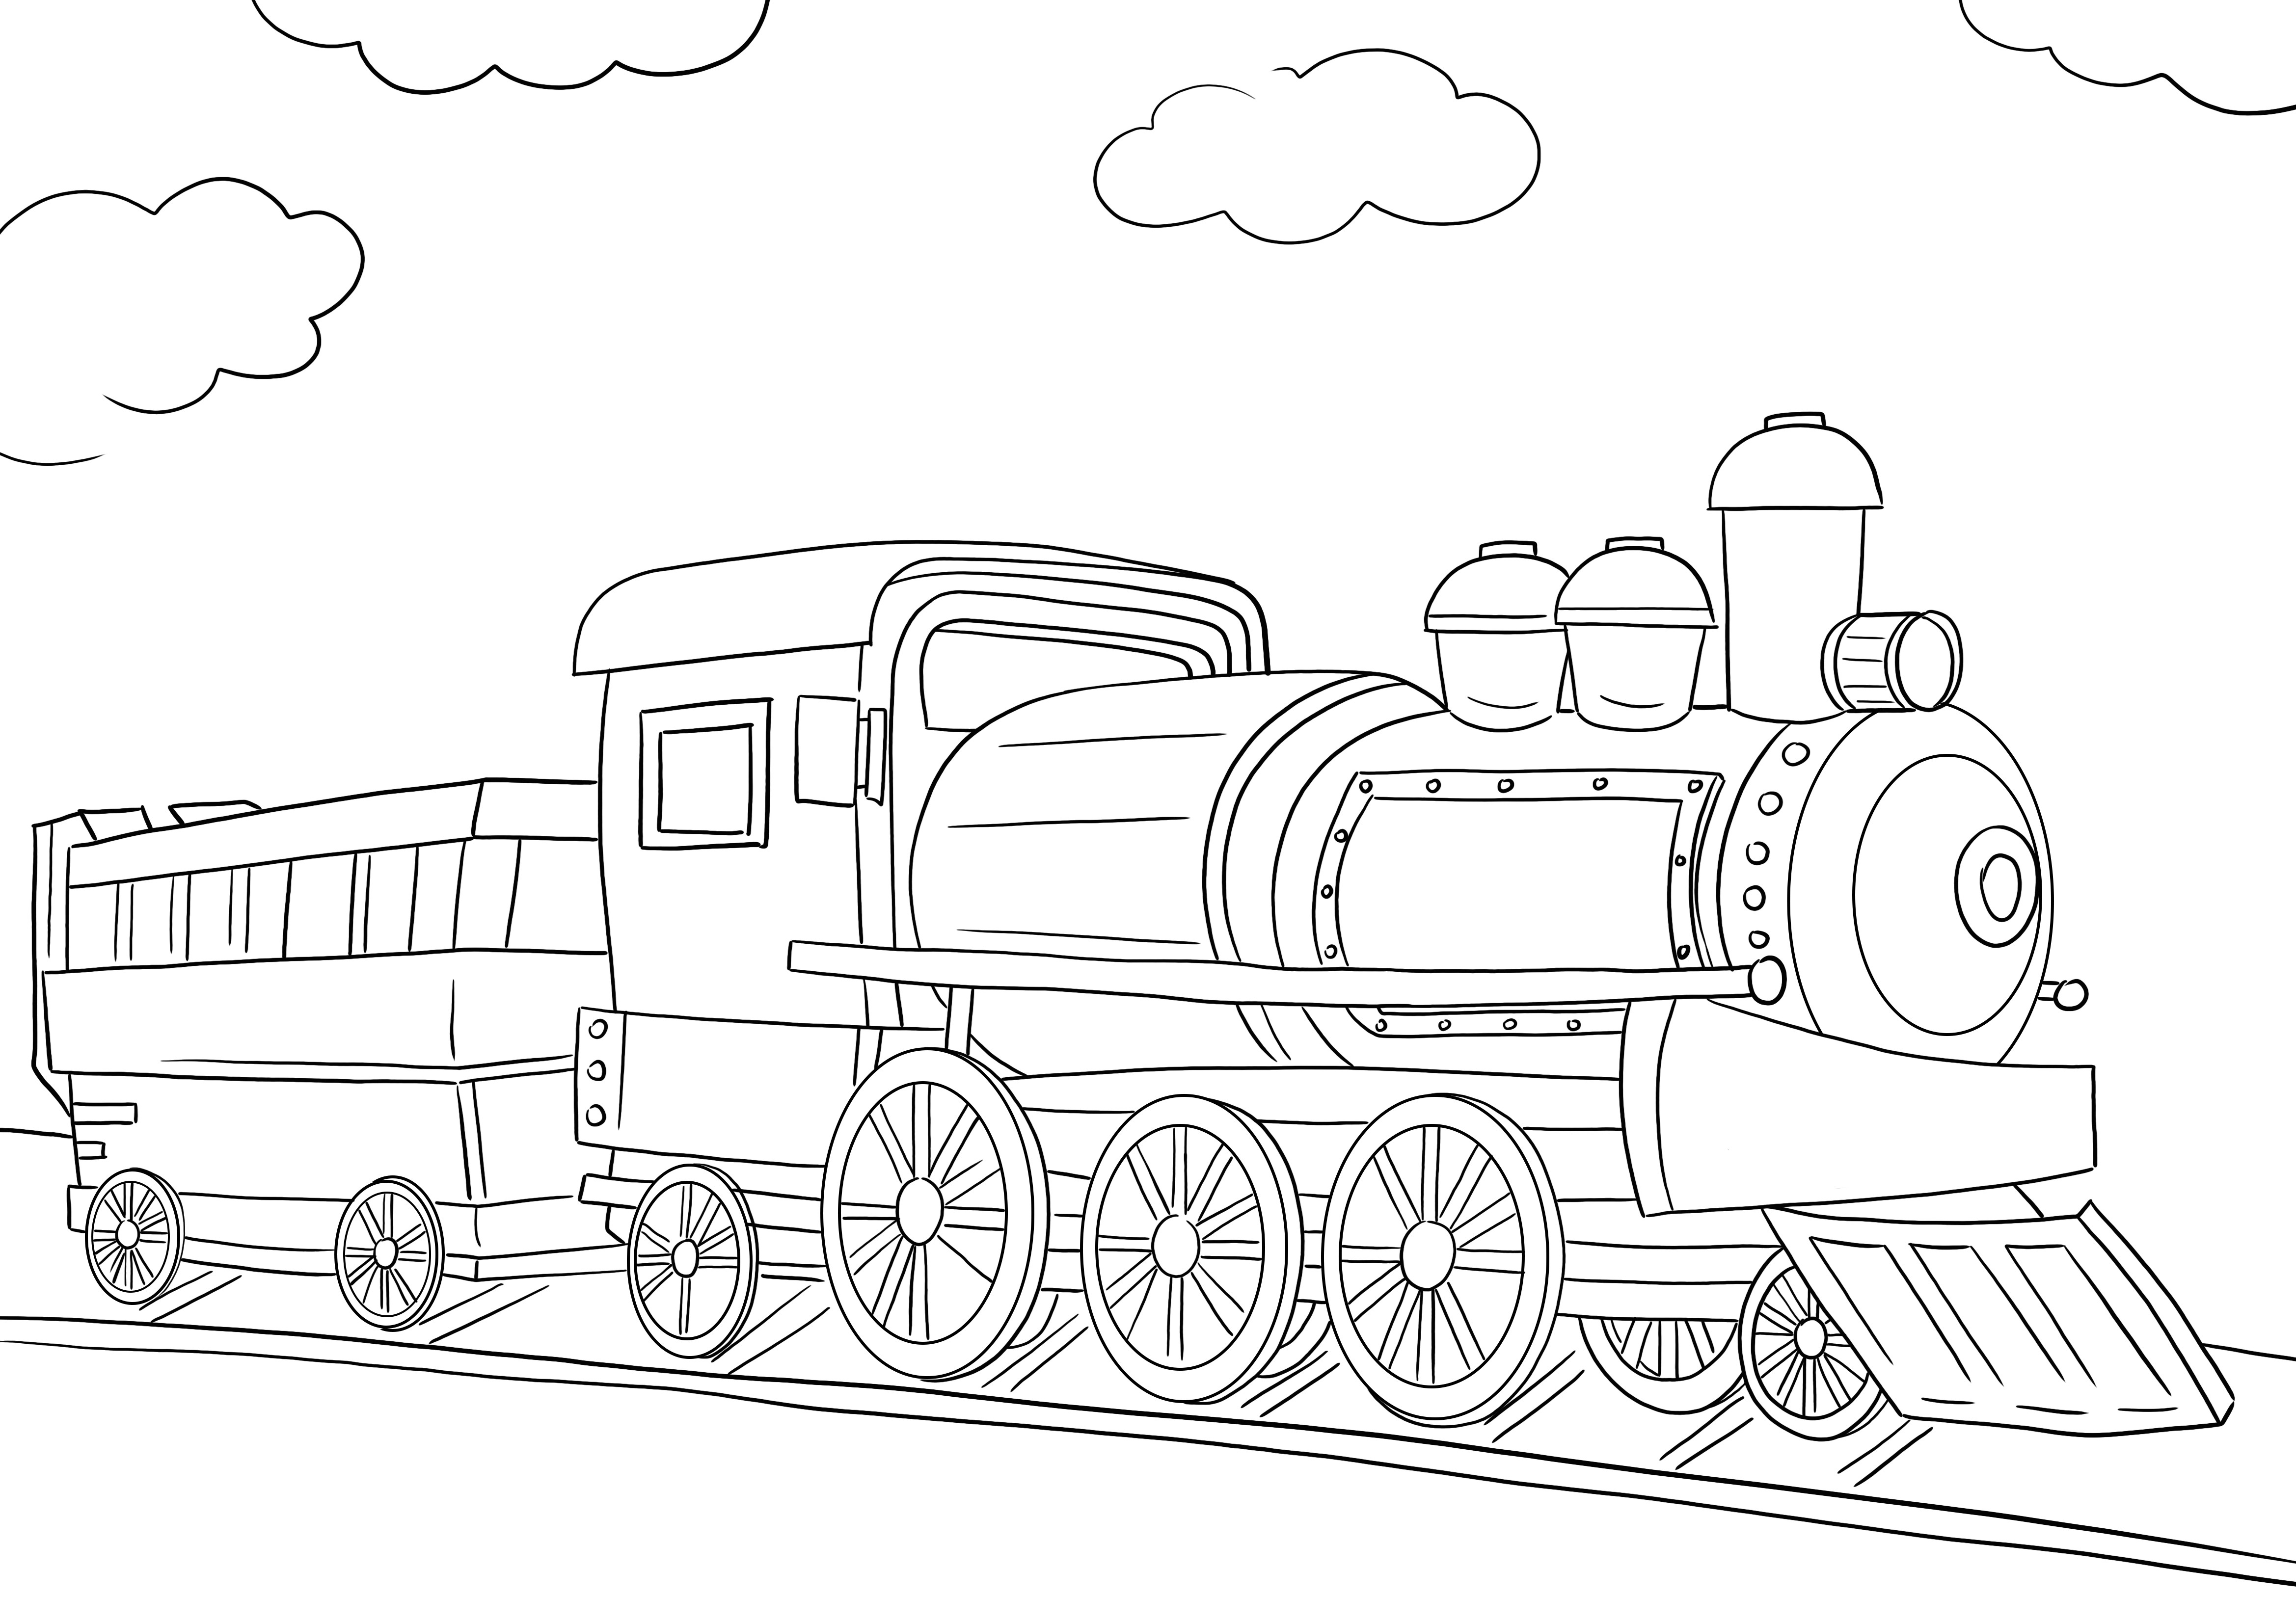 Uma imagem colorida gratuita de uma locomotiva de trem para imprimir ou baixar